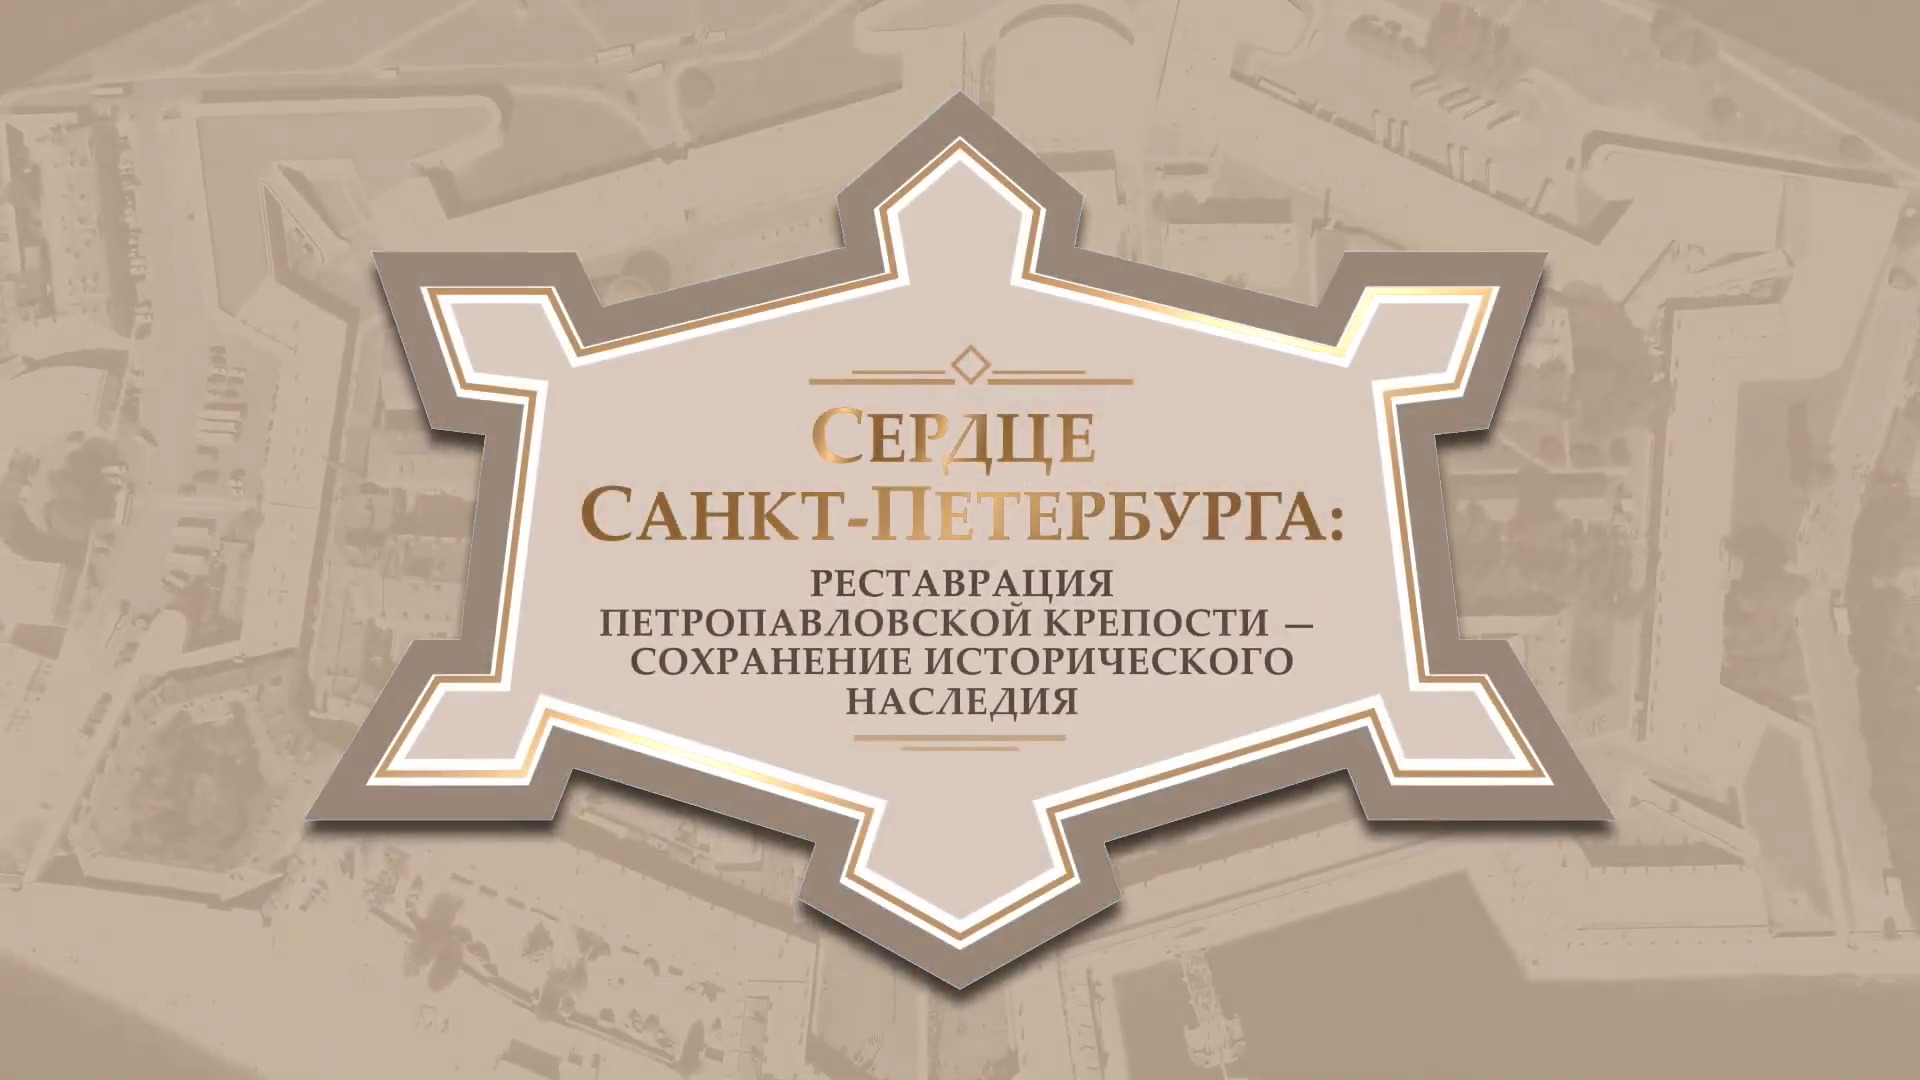 Сердце Санкт-Петербурга: реставрация Петропавловской крепости - сохранение исторического наследия